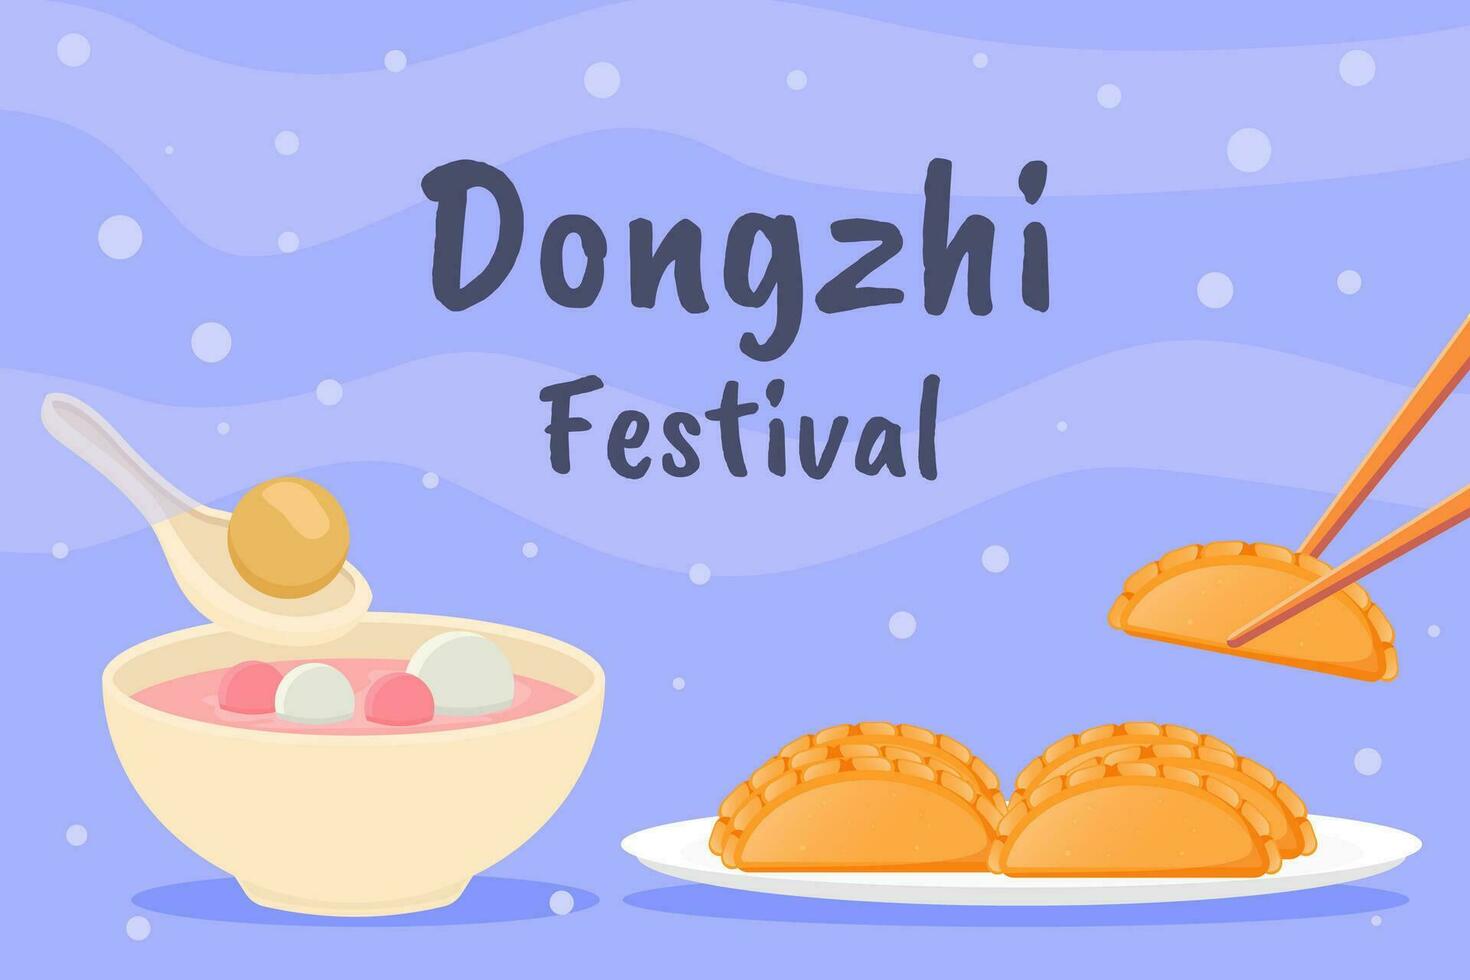 platt dongzhi festival bakgrund illustration design vektor